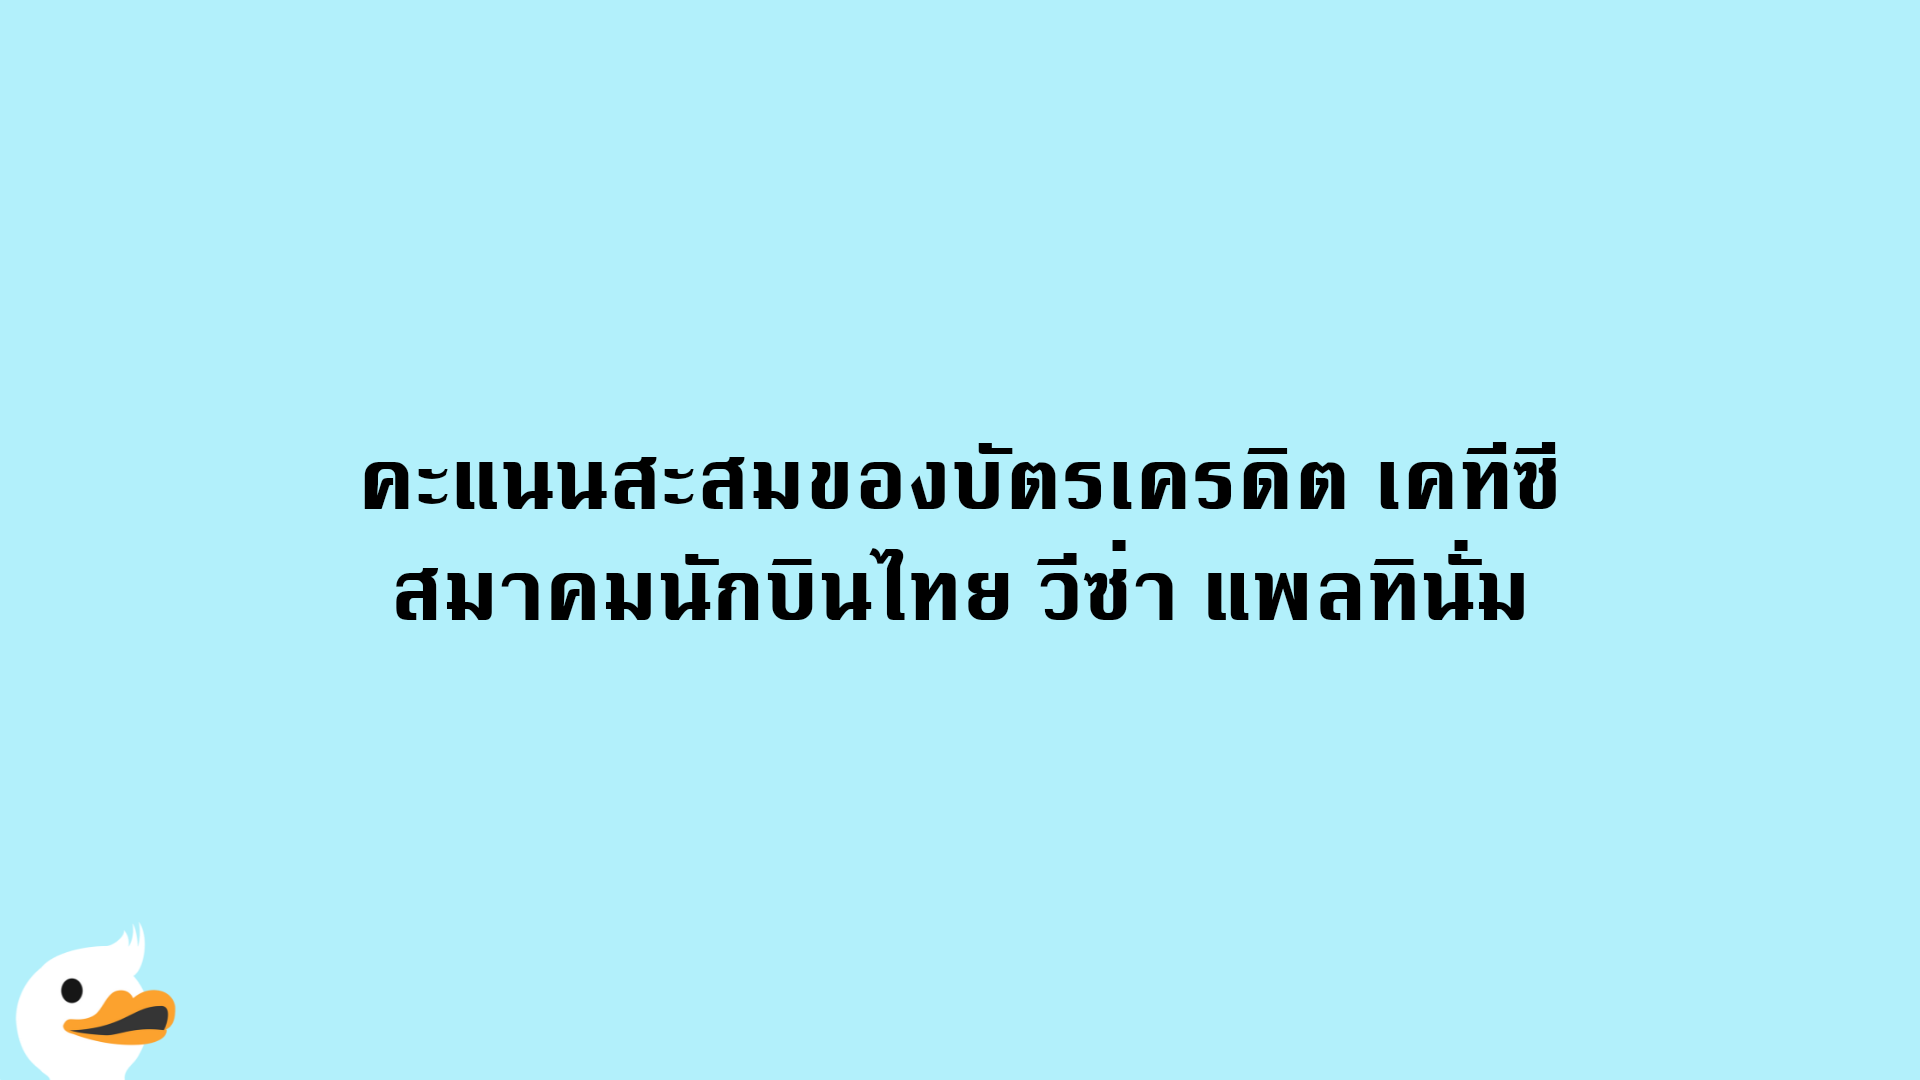 คะแนนสะสมของบัตรเครดิต เคทีซี สมาคมนักบินไทย วีซ่า แพลทินั่ม